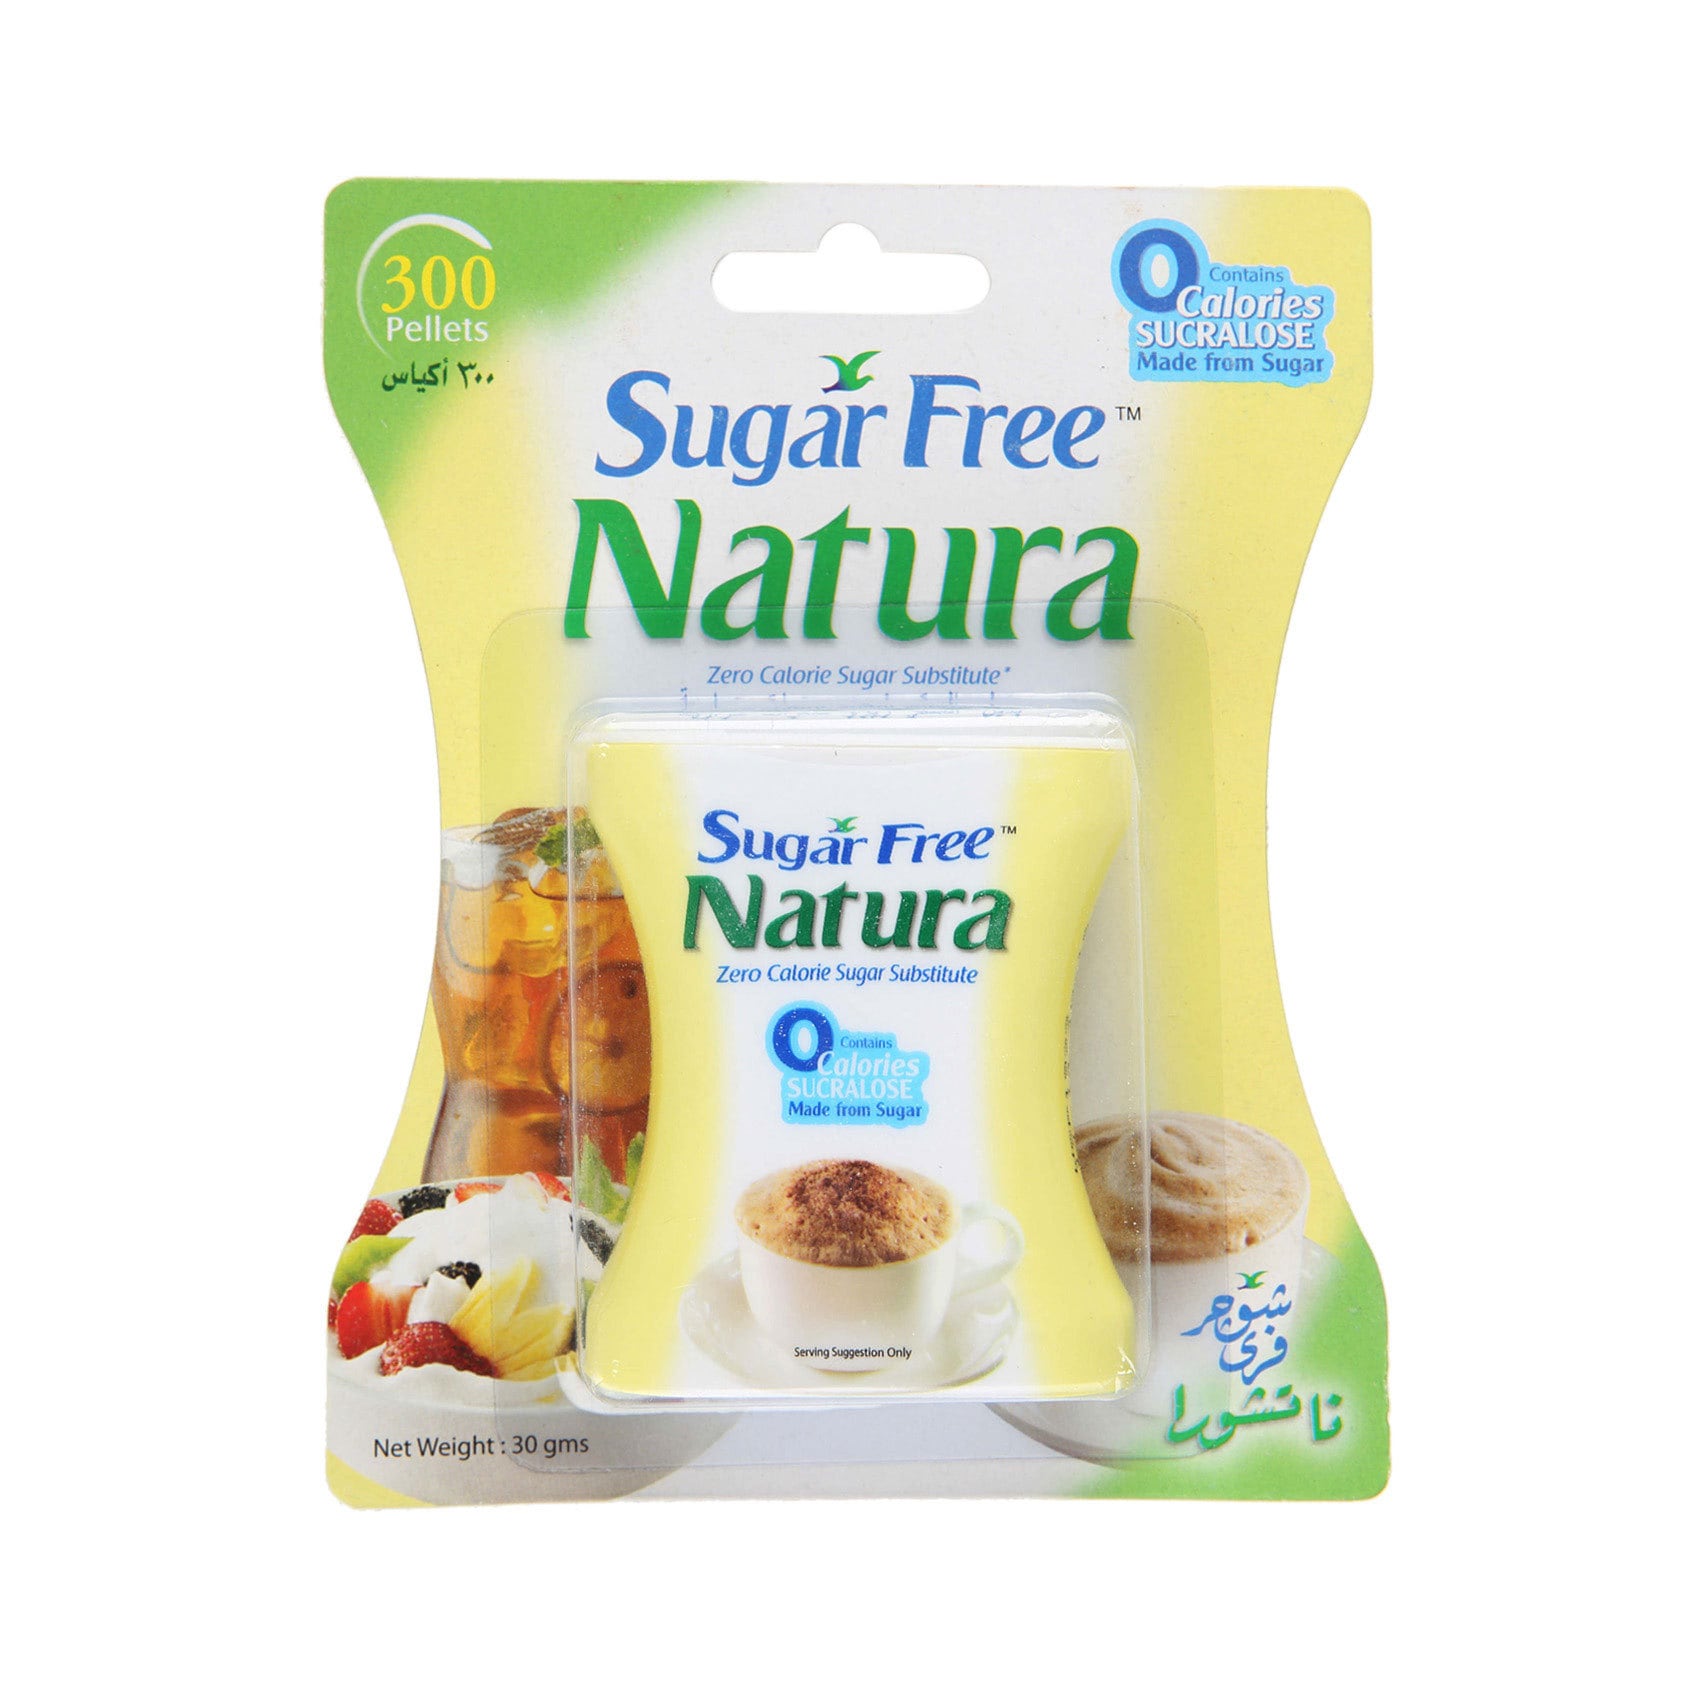 Buy Sugar Free Natura Pack of 300 Online - Shop Food Cupboard on ...